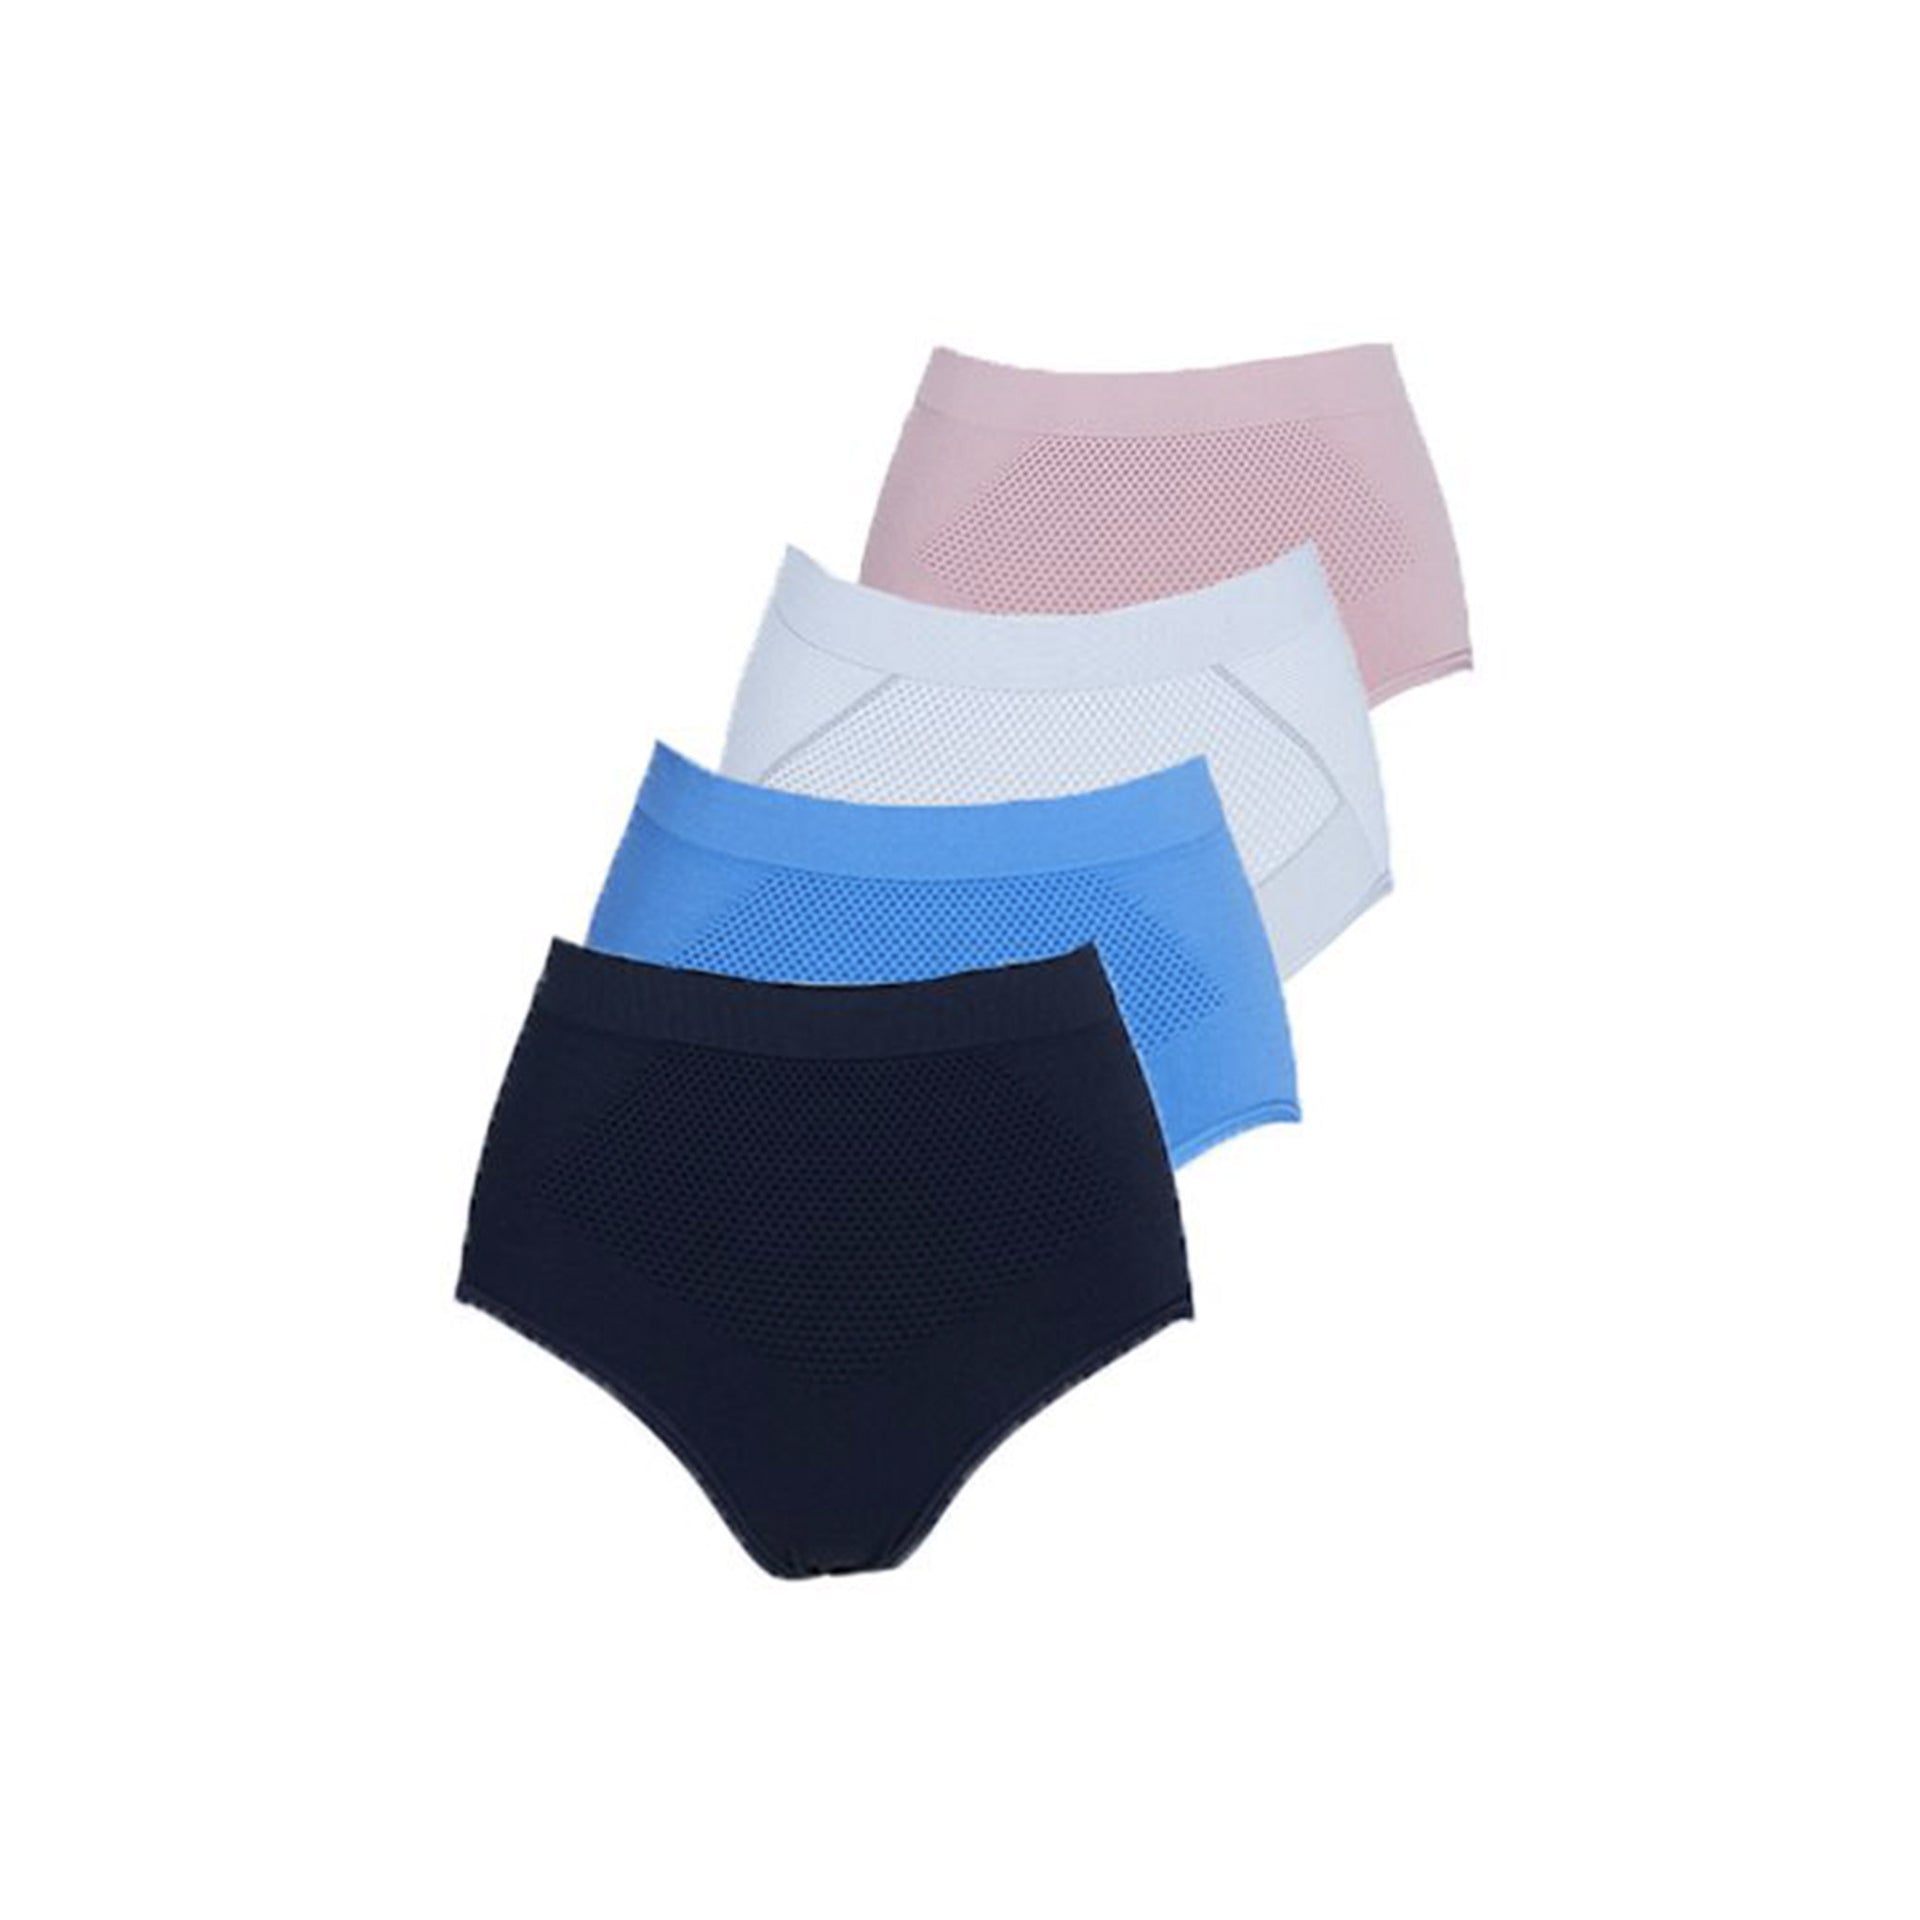 PP Graphene Women's Mitochondrion Panties (4pc Set Mix Colour